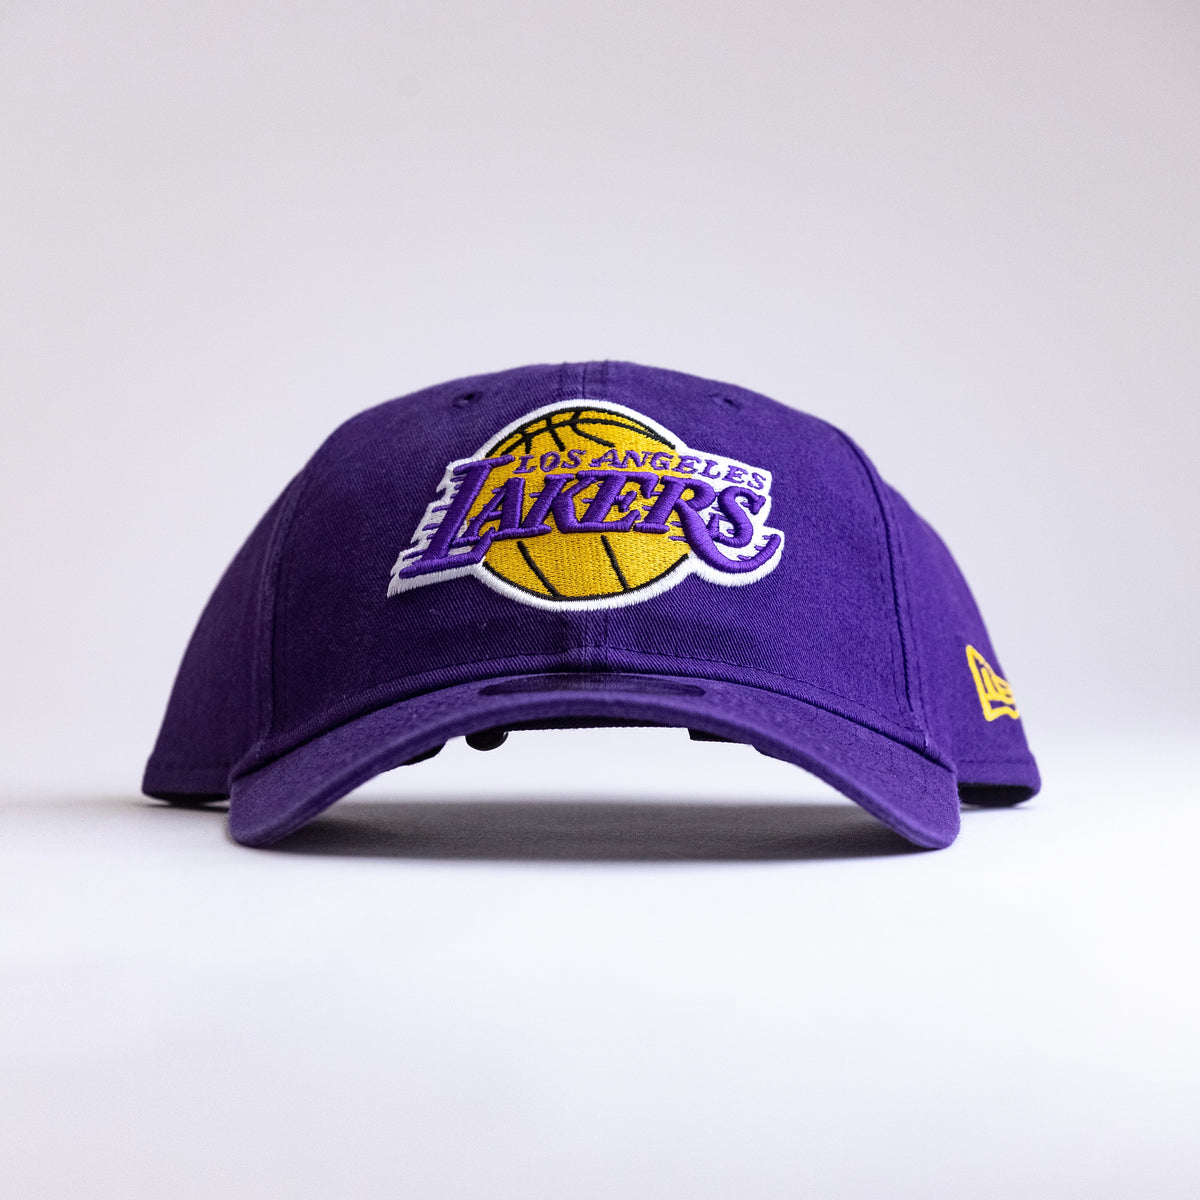 New Era Classic Loslak Ot Dad Hat - Purple